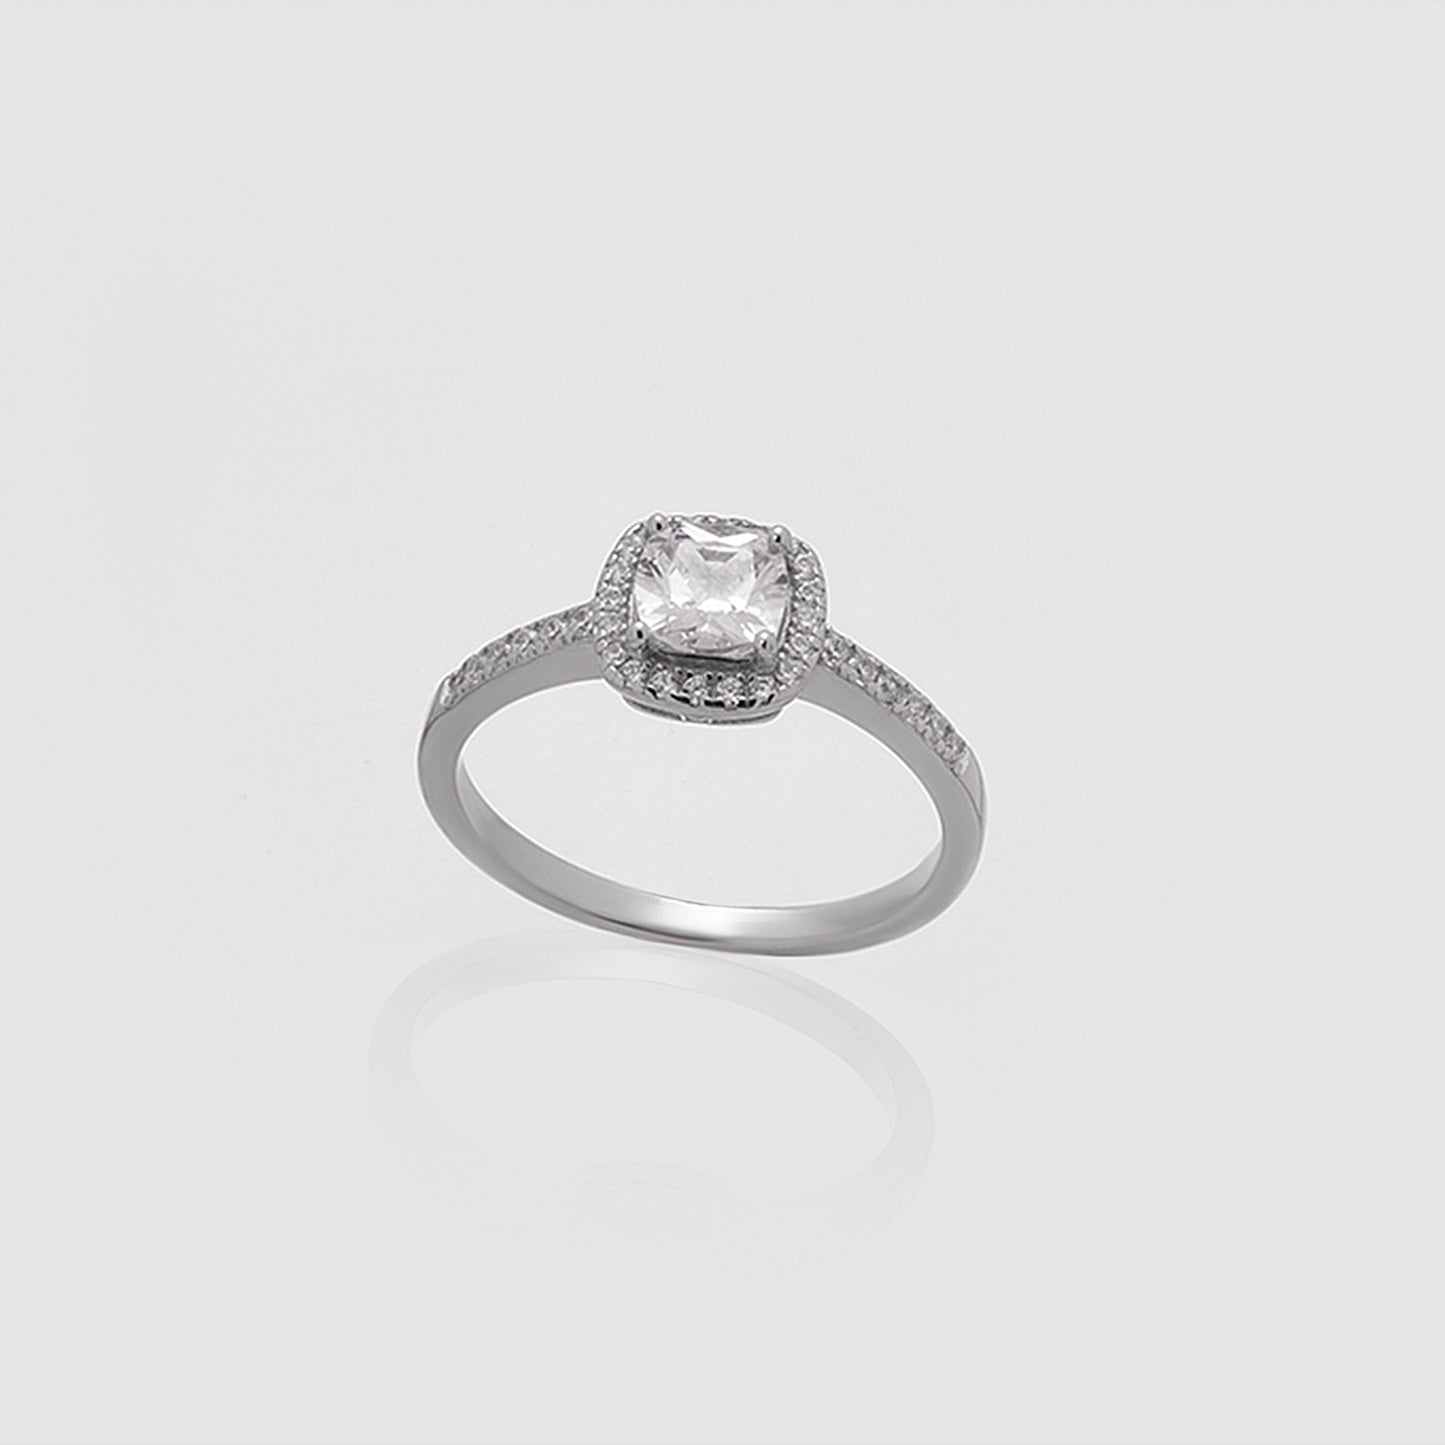 Damen Halo-Solitär Viereck KristalleSterling Sterling Silber 925 Silber Ring Damen Verlobungsring Echtschmuck